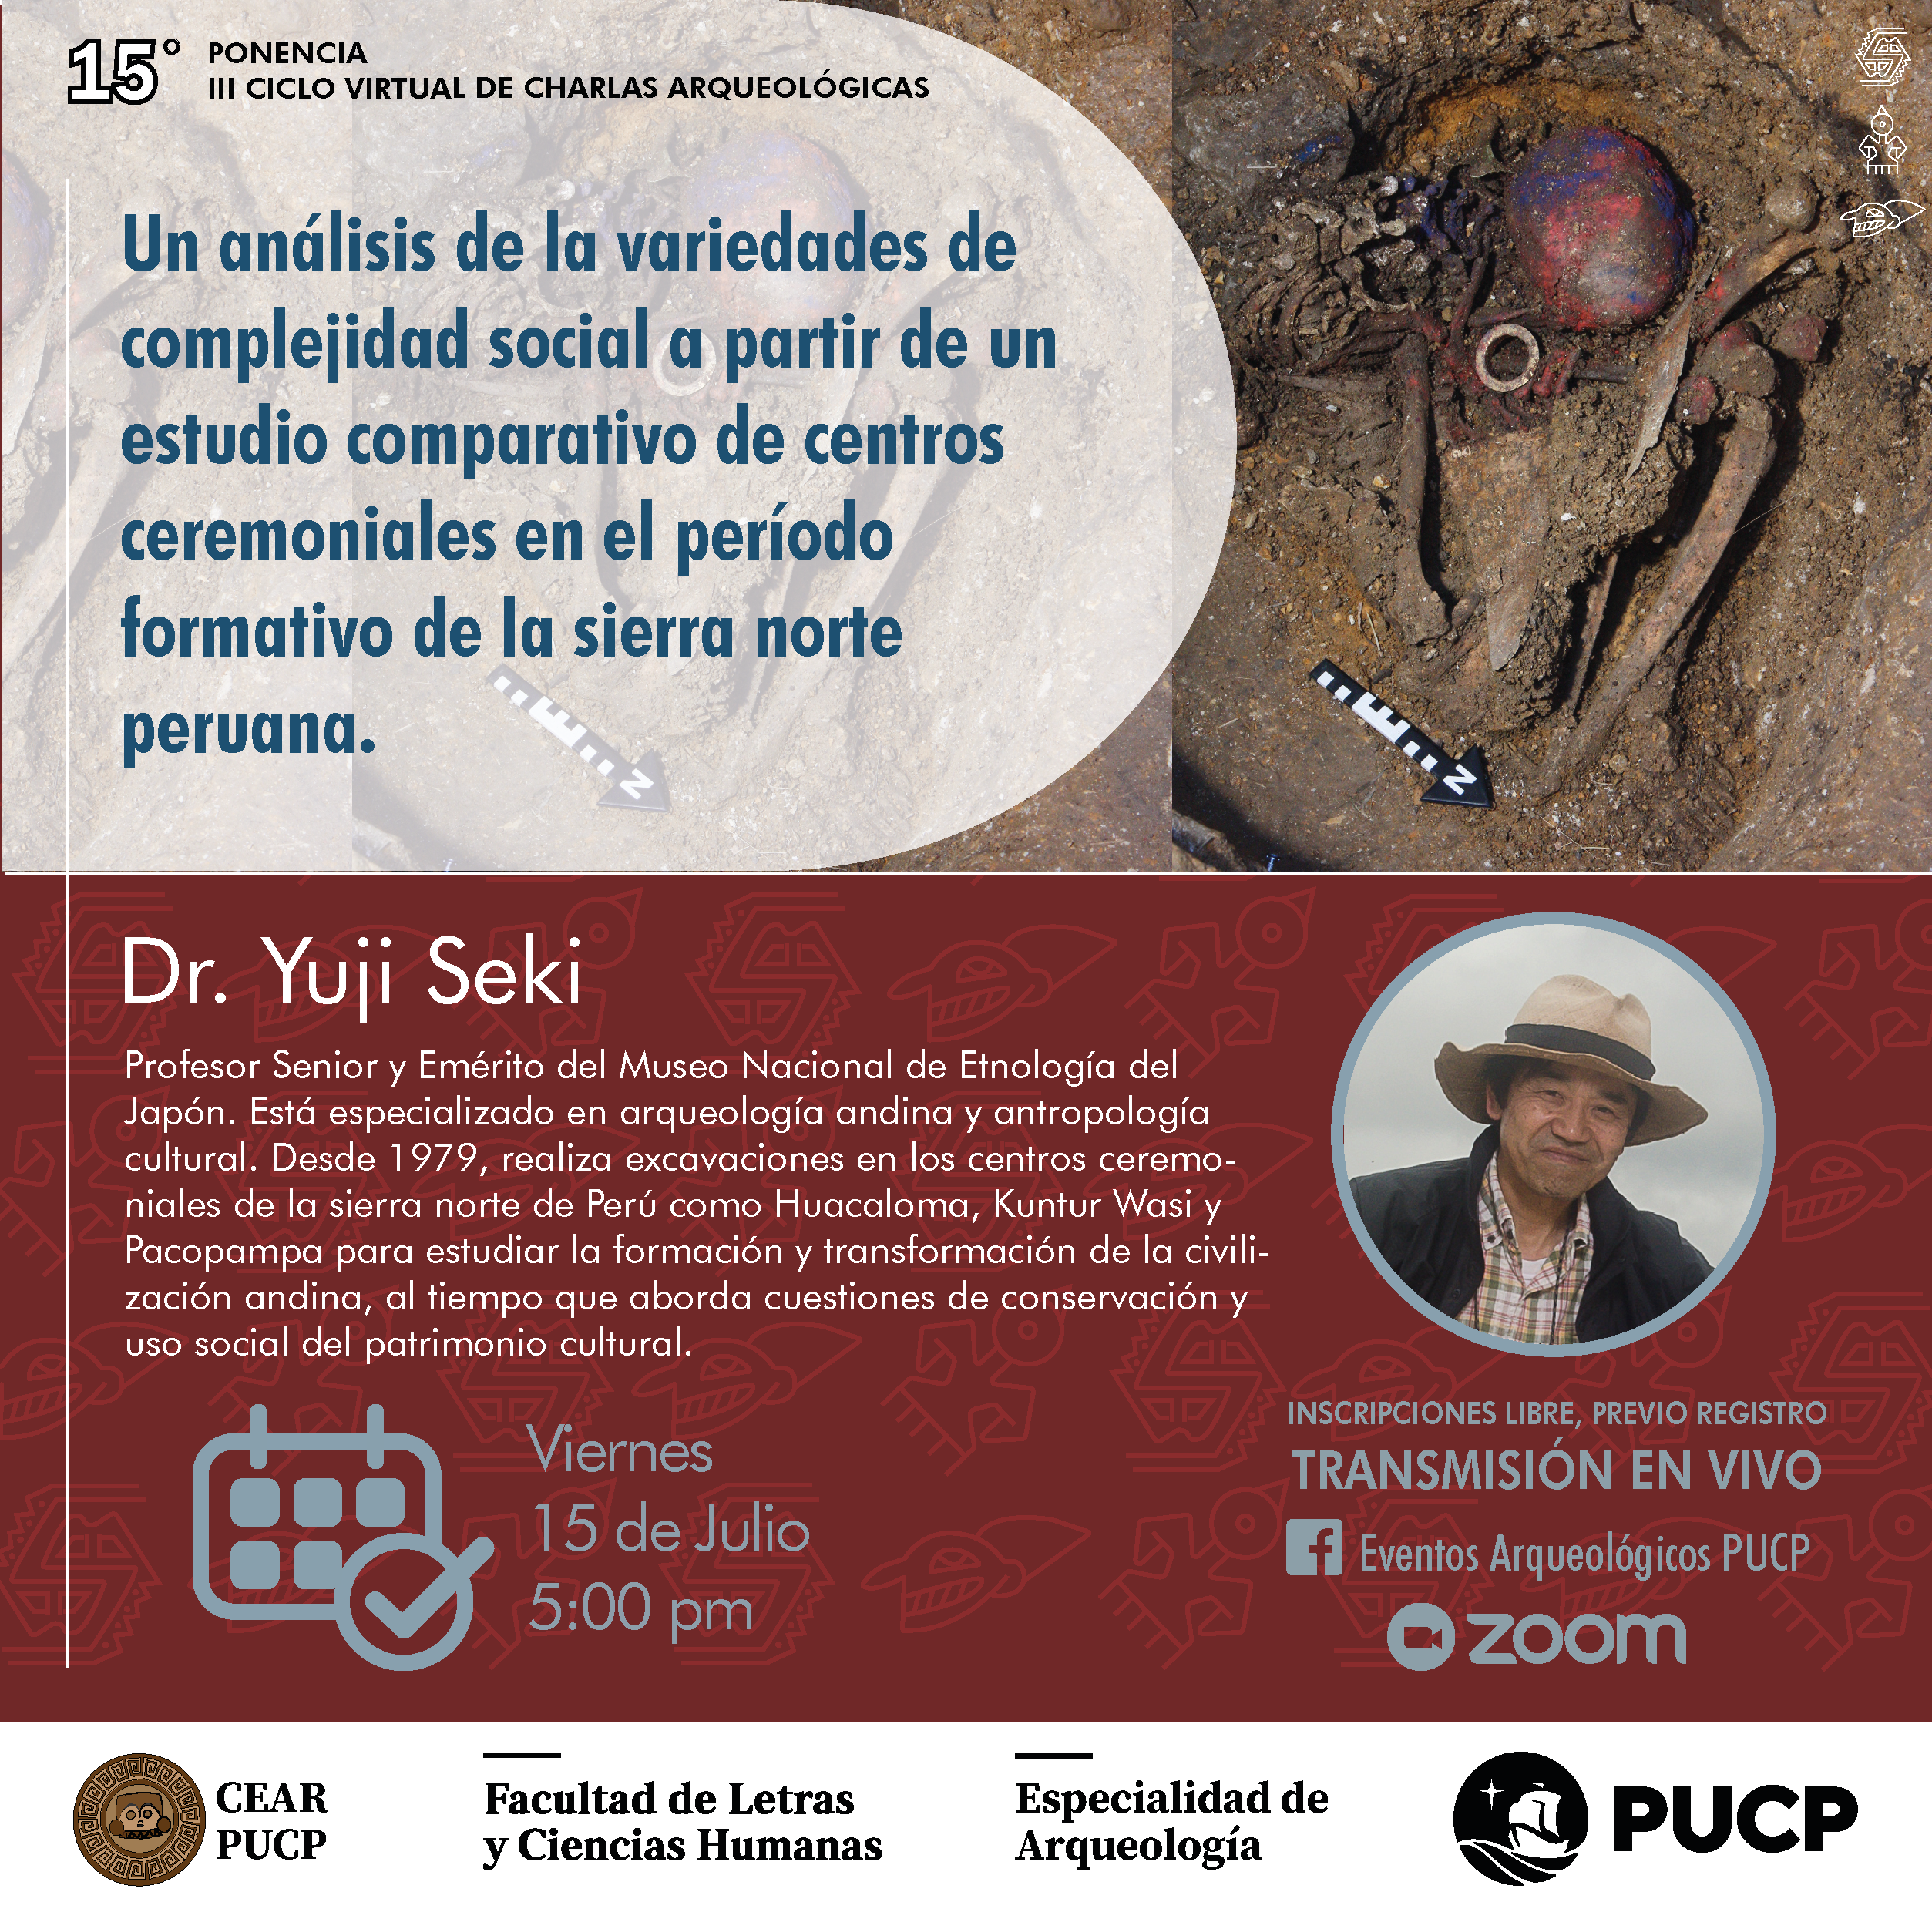 Un análisis de la variedades de complejidad social a partir de un estudio comparativo de centros ceremoniales en el período formativo de la sierra norte peruana